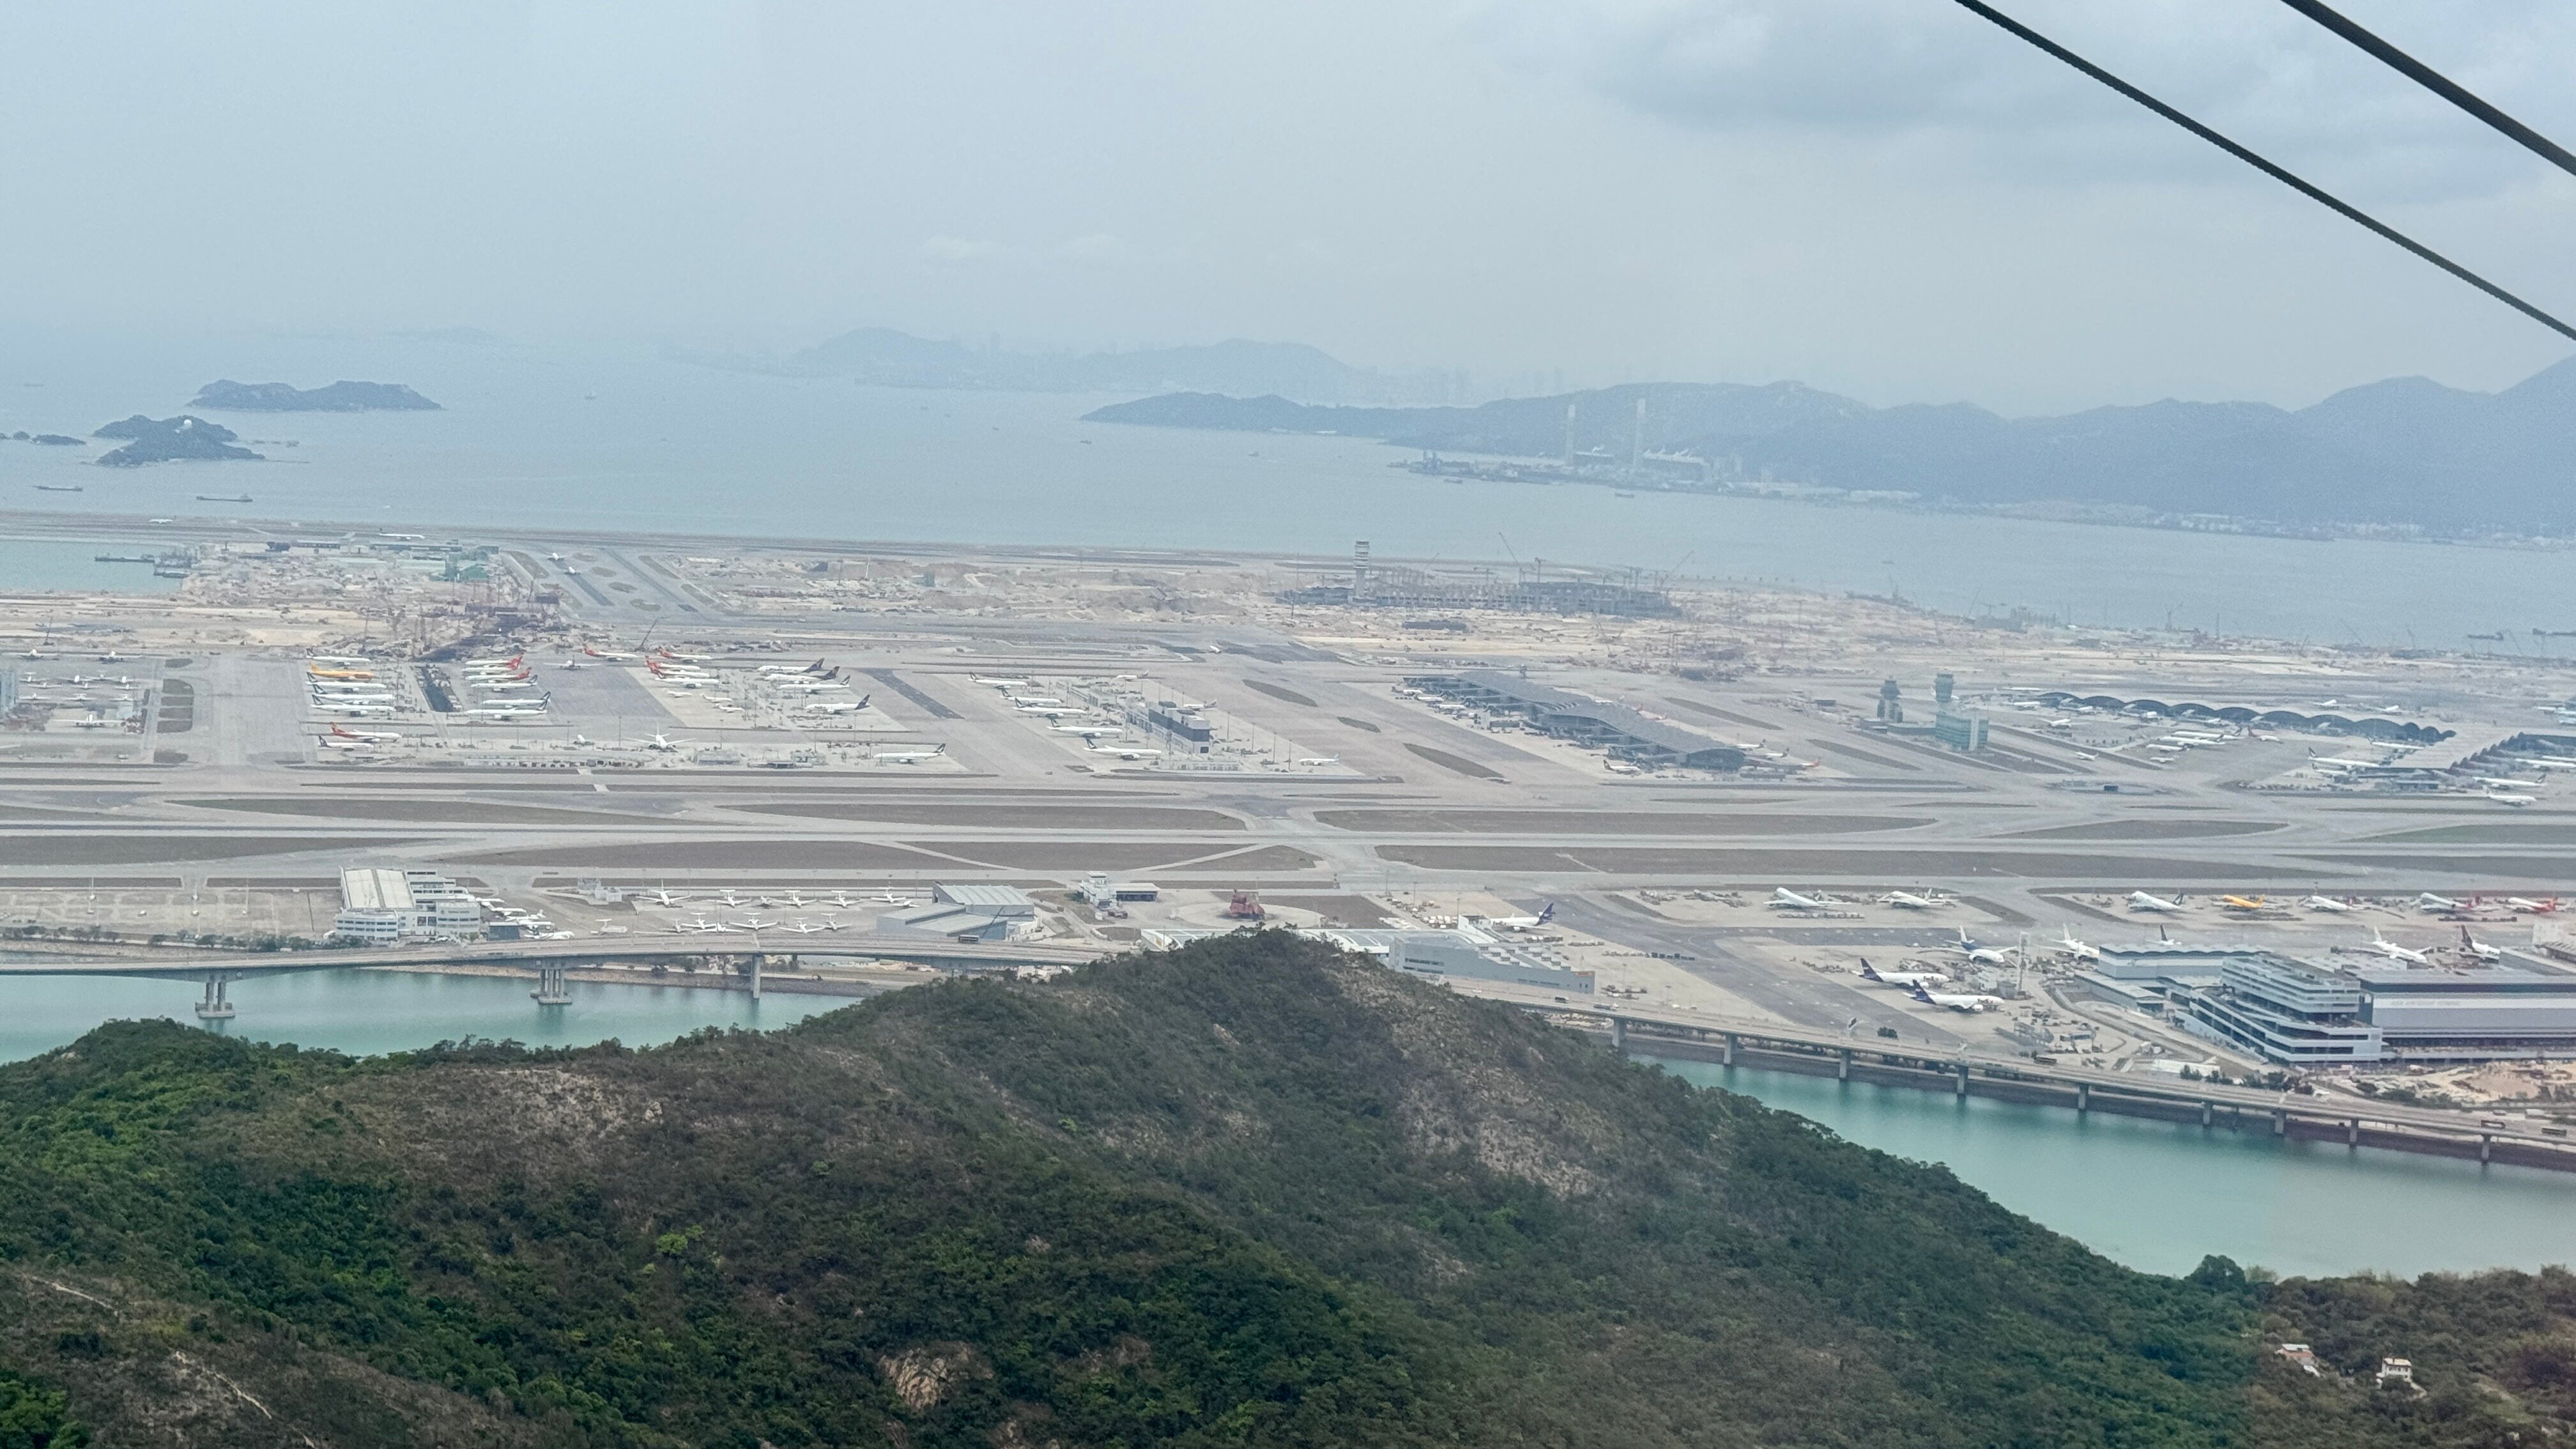 Вид на аэропорт Гонконга из кабинки канатной дороги


